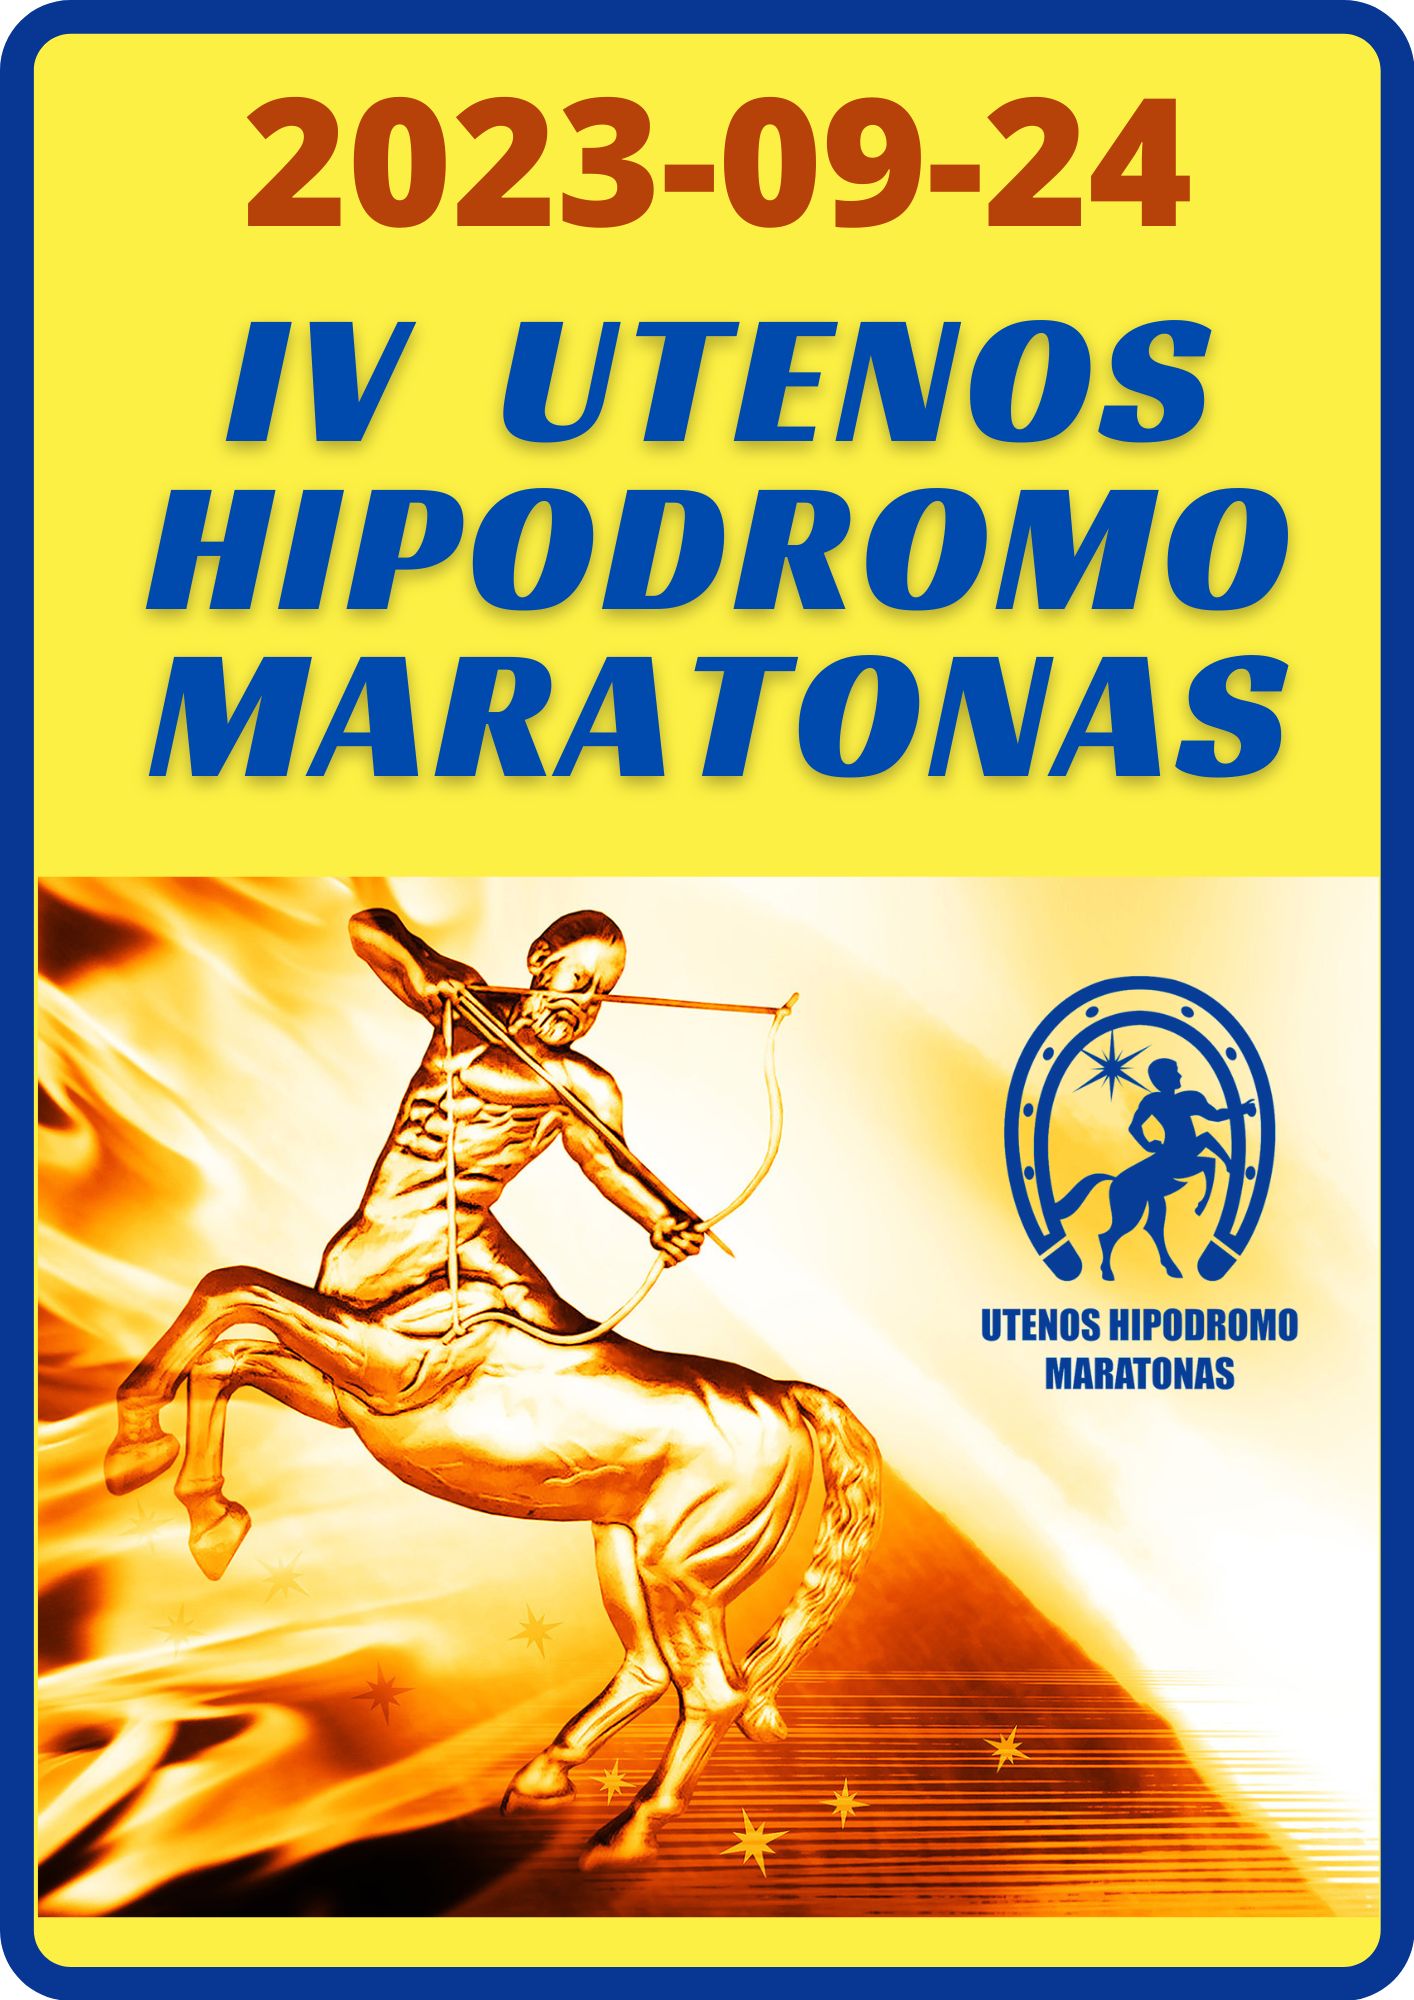 Utenos Hipodromo maratonas 2023